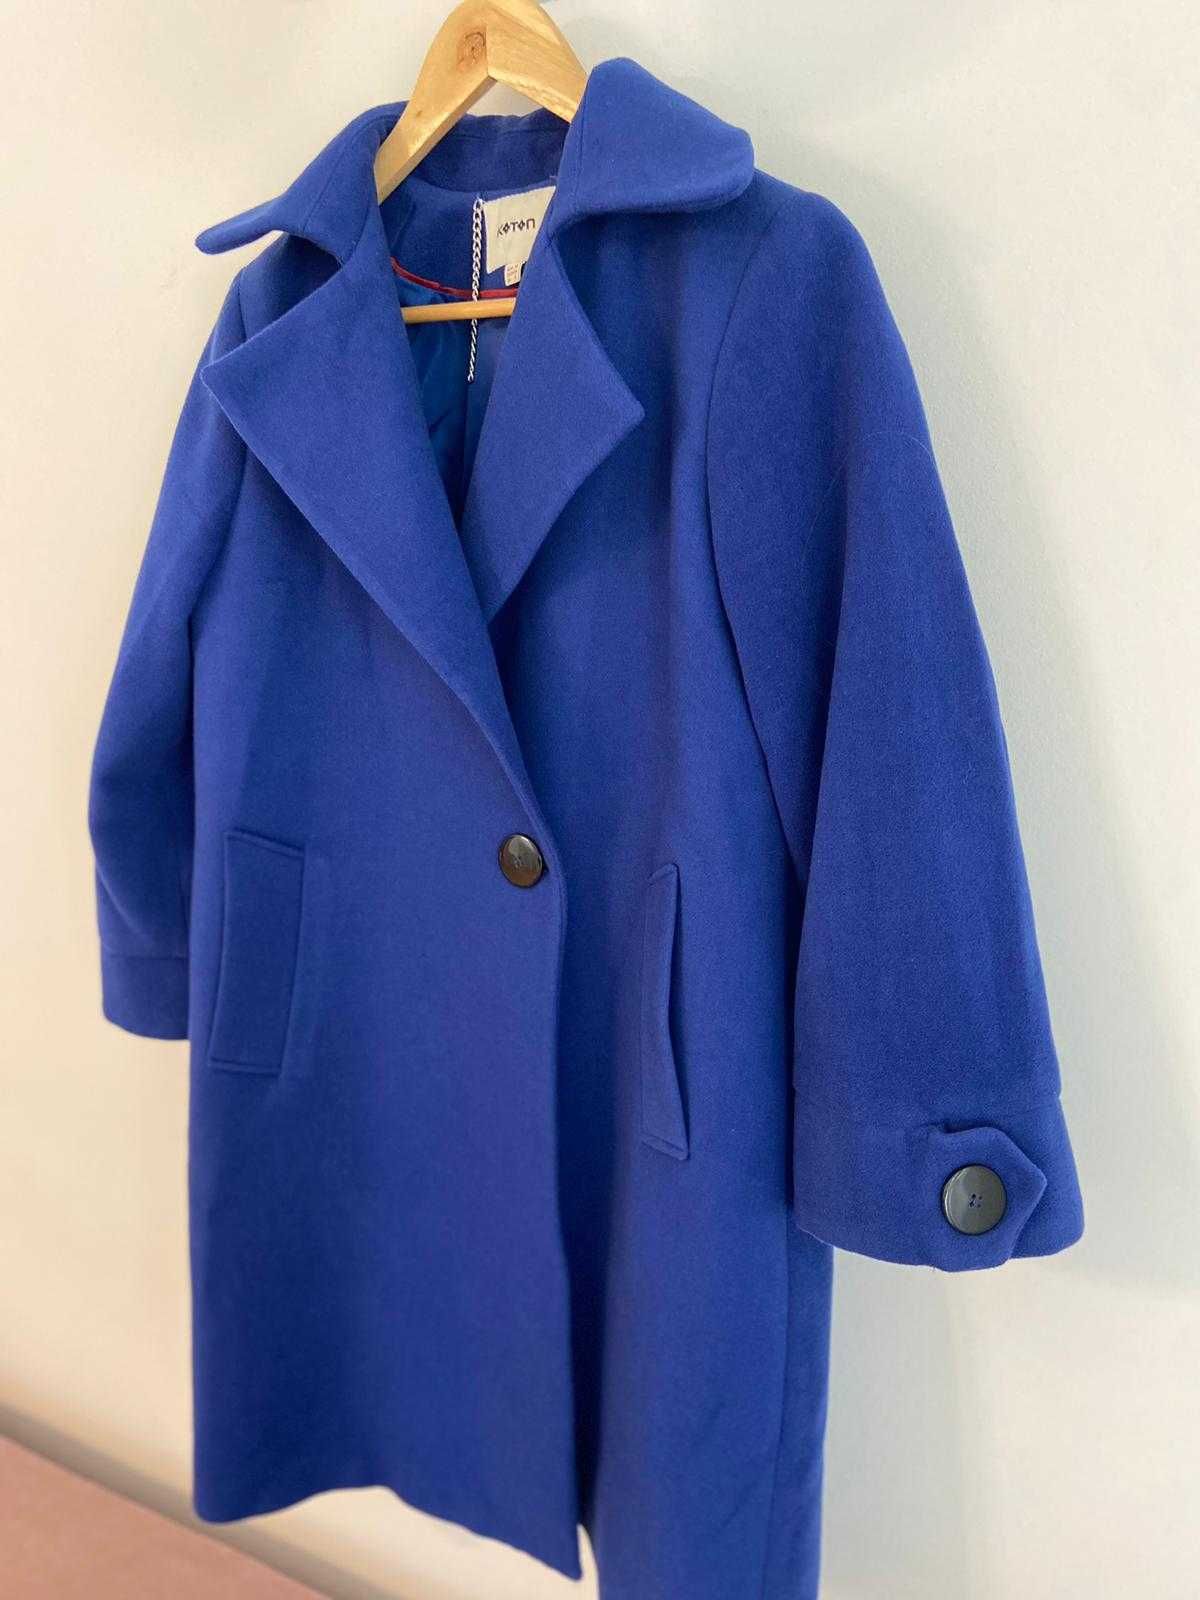 Palton albastru dama Koton cu maneci clopotel - marimea L